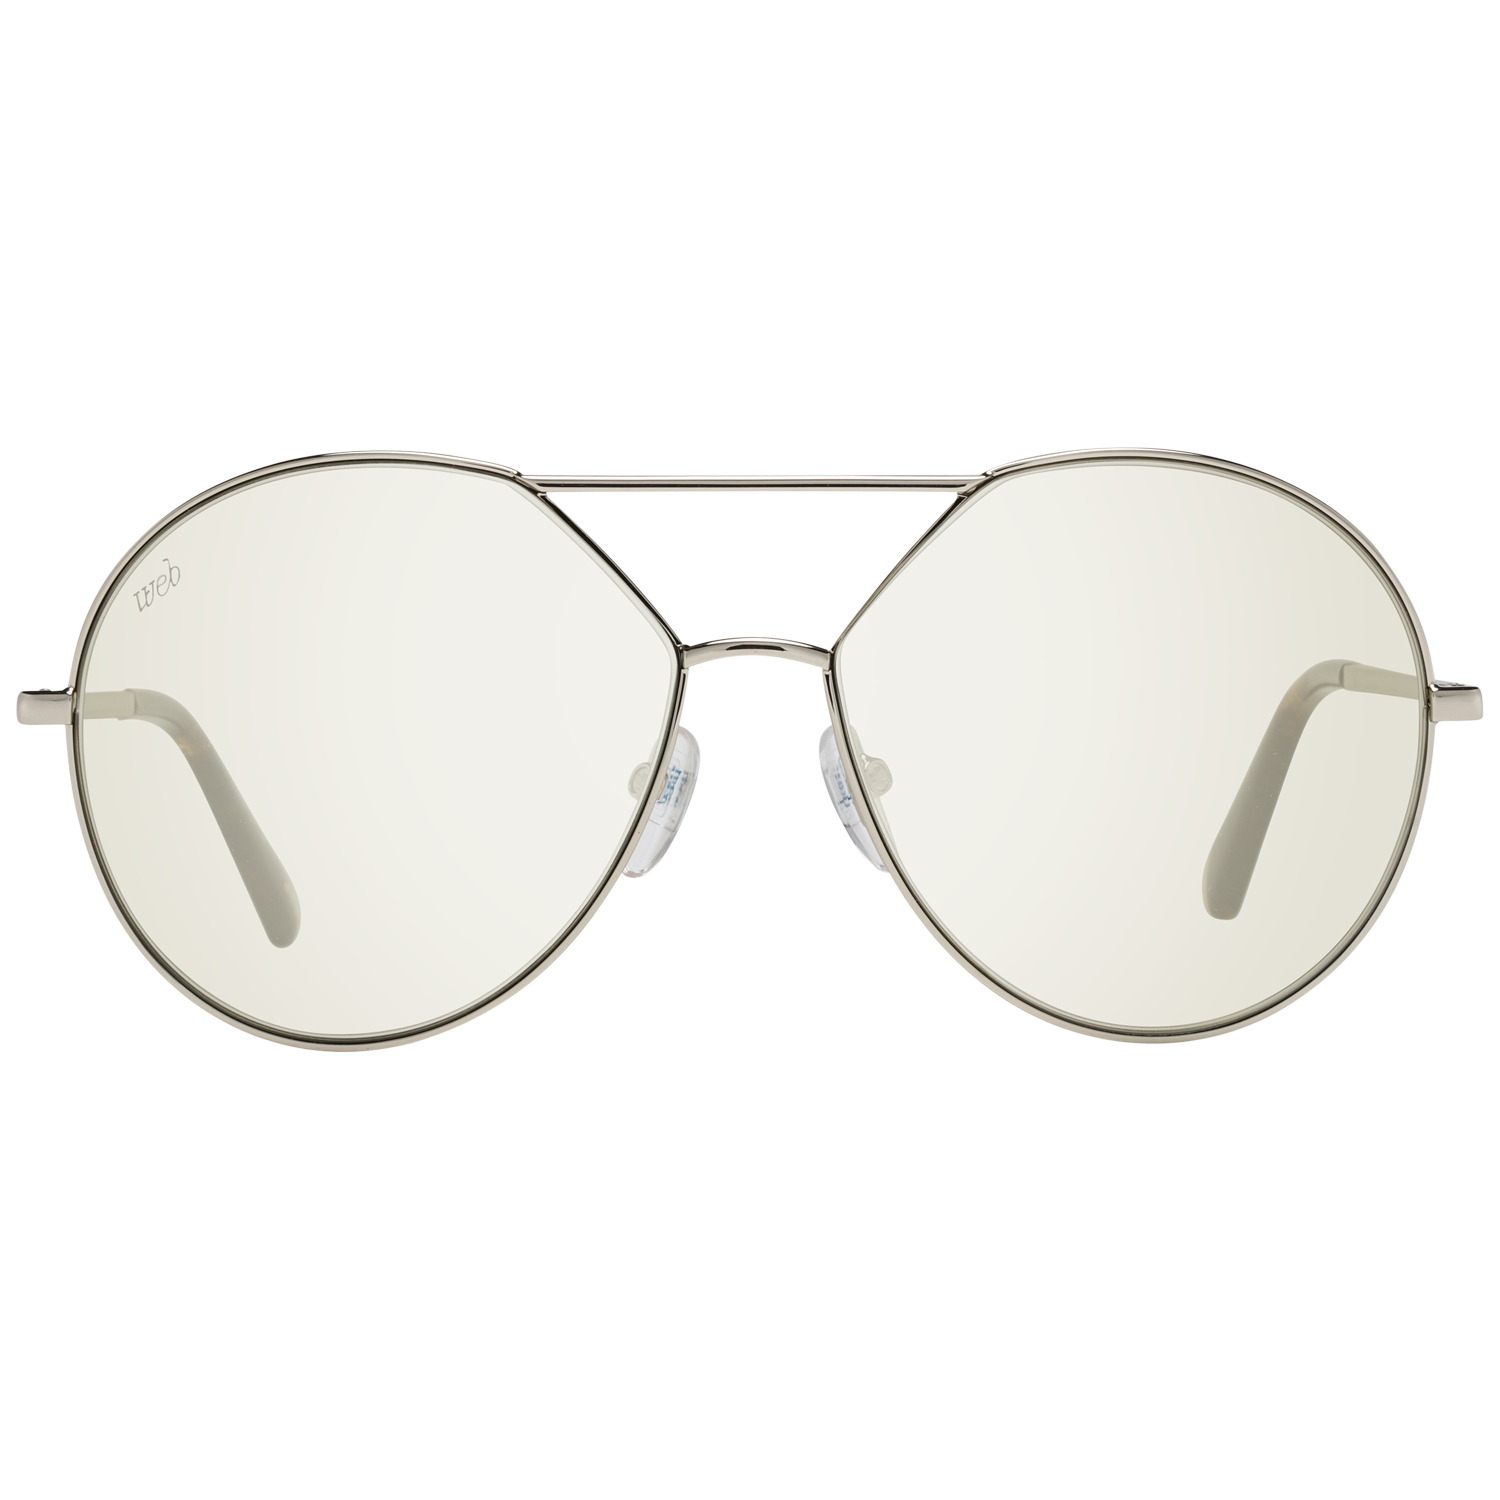 Web Sunglasses Web Sunglasses WE0286 32Q 57 Eyeglasses Eyewear UK USA Australia 